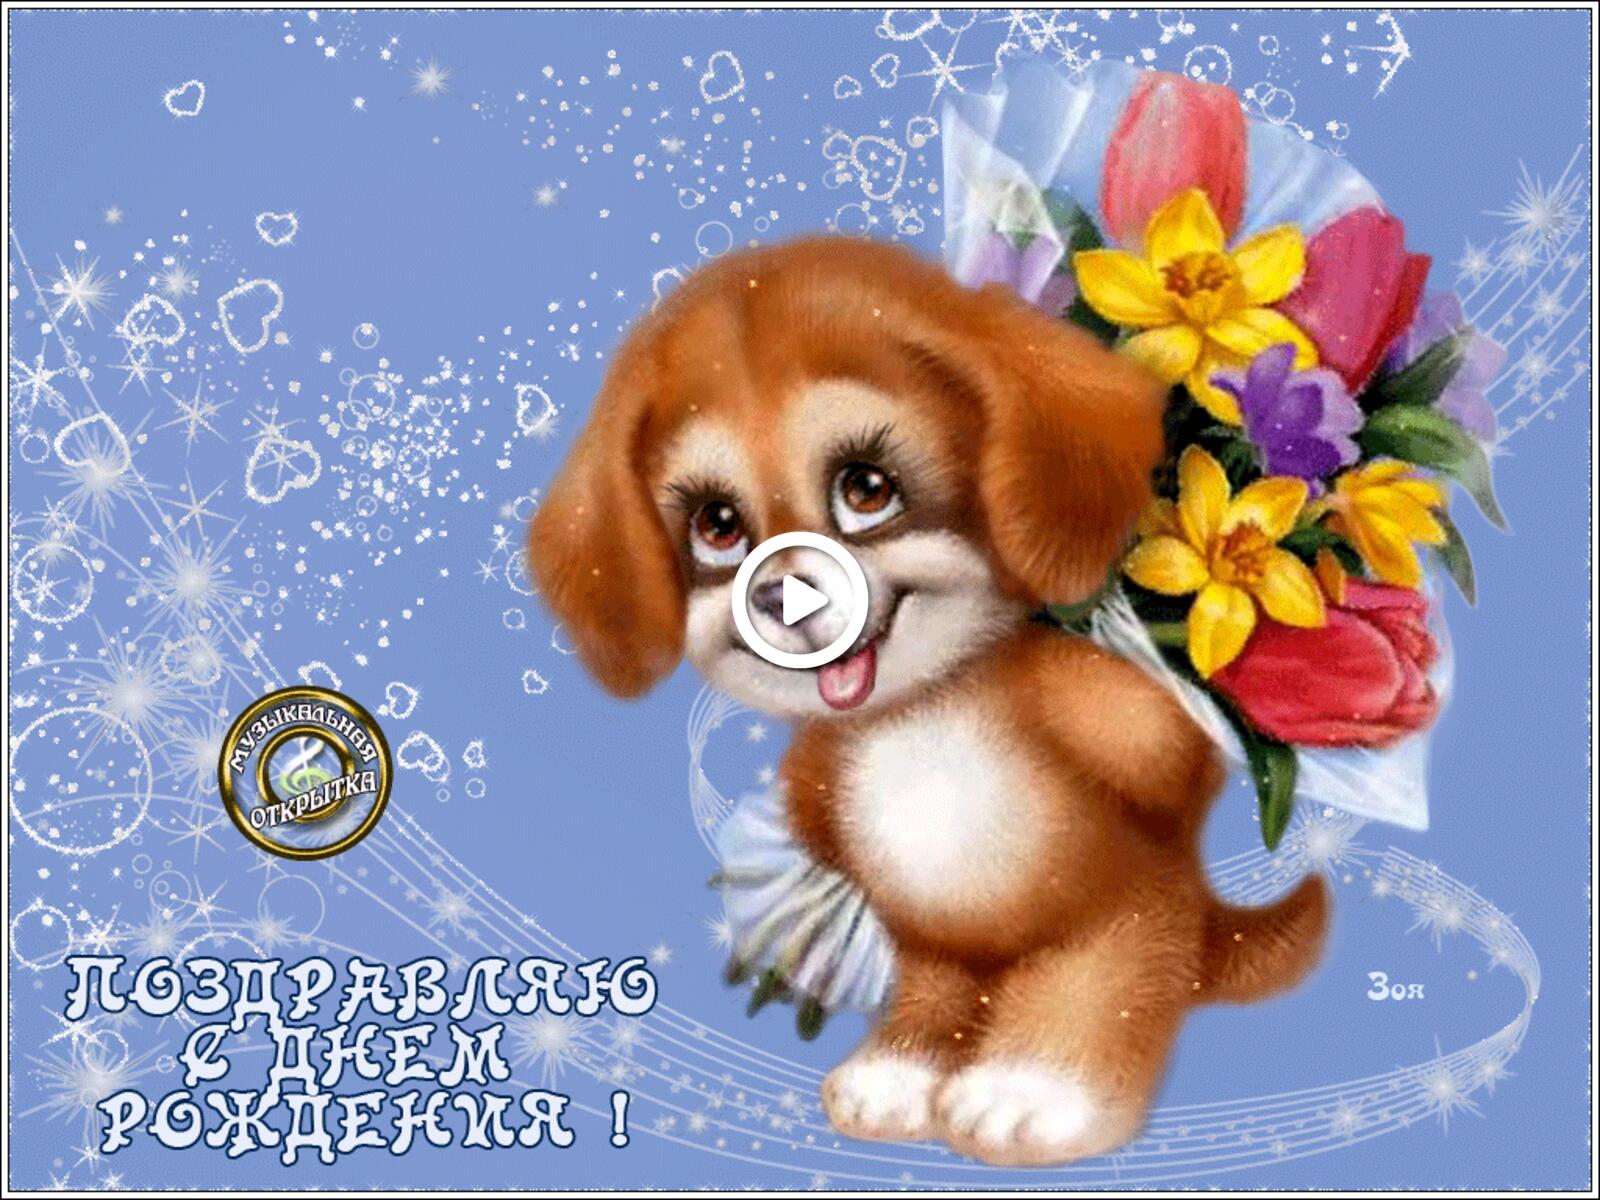 免费明信片可爱的小狗为自己的生日献上一束鲜花